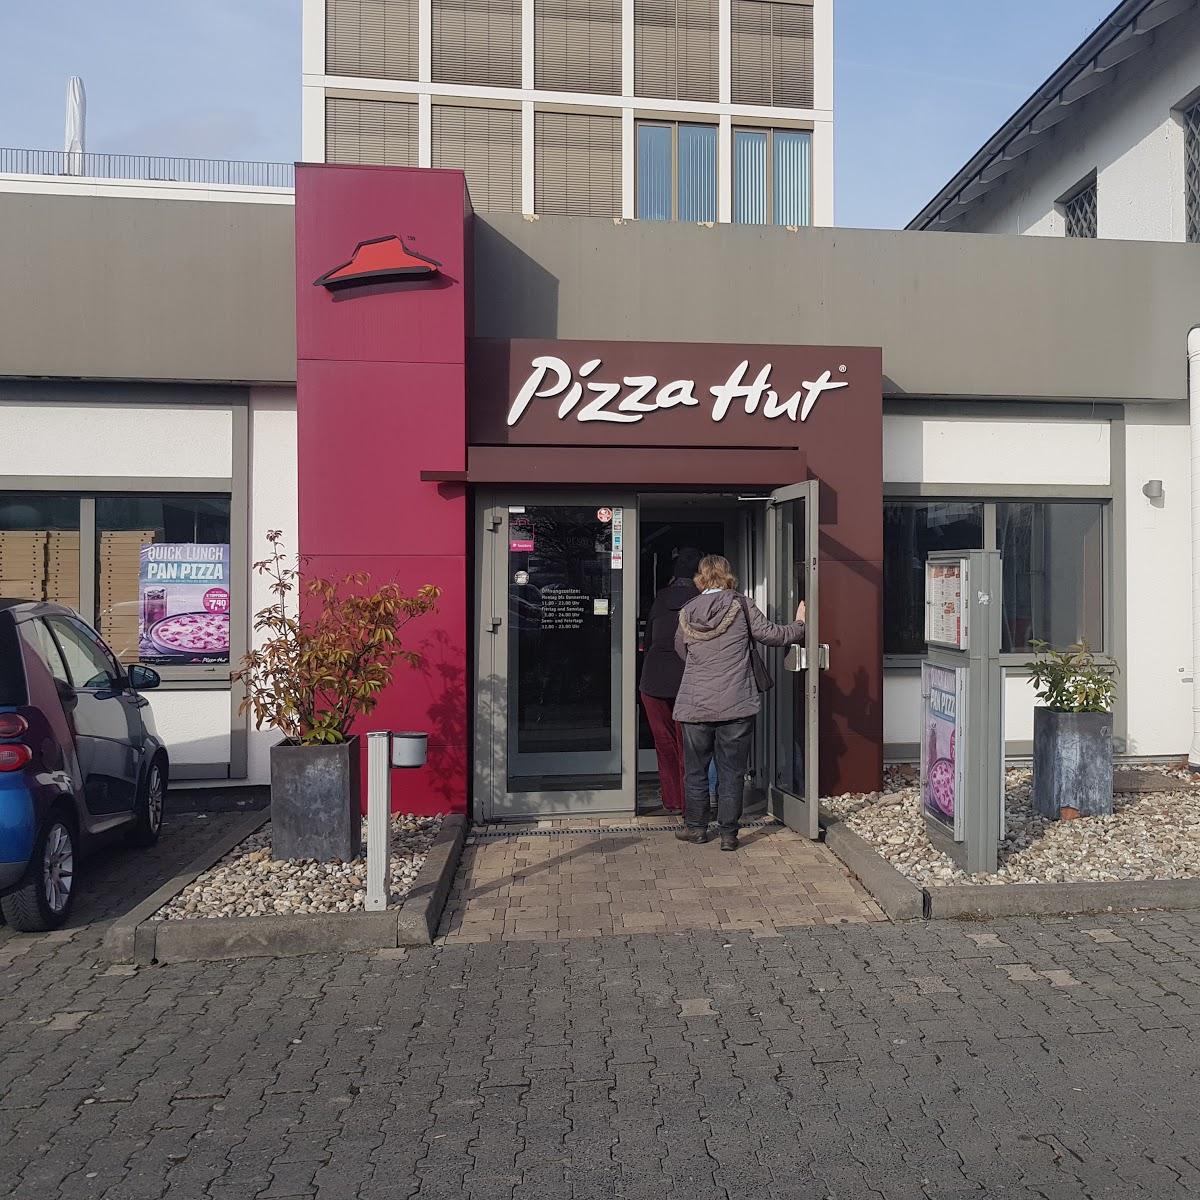 Restaurant "Pizza Hut" in Wiesbaden